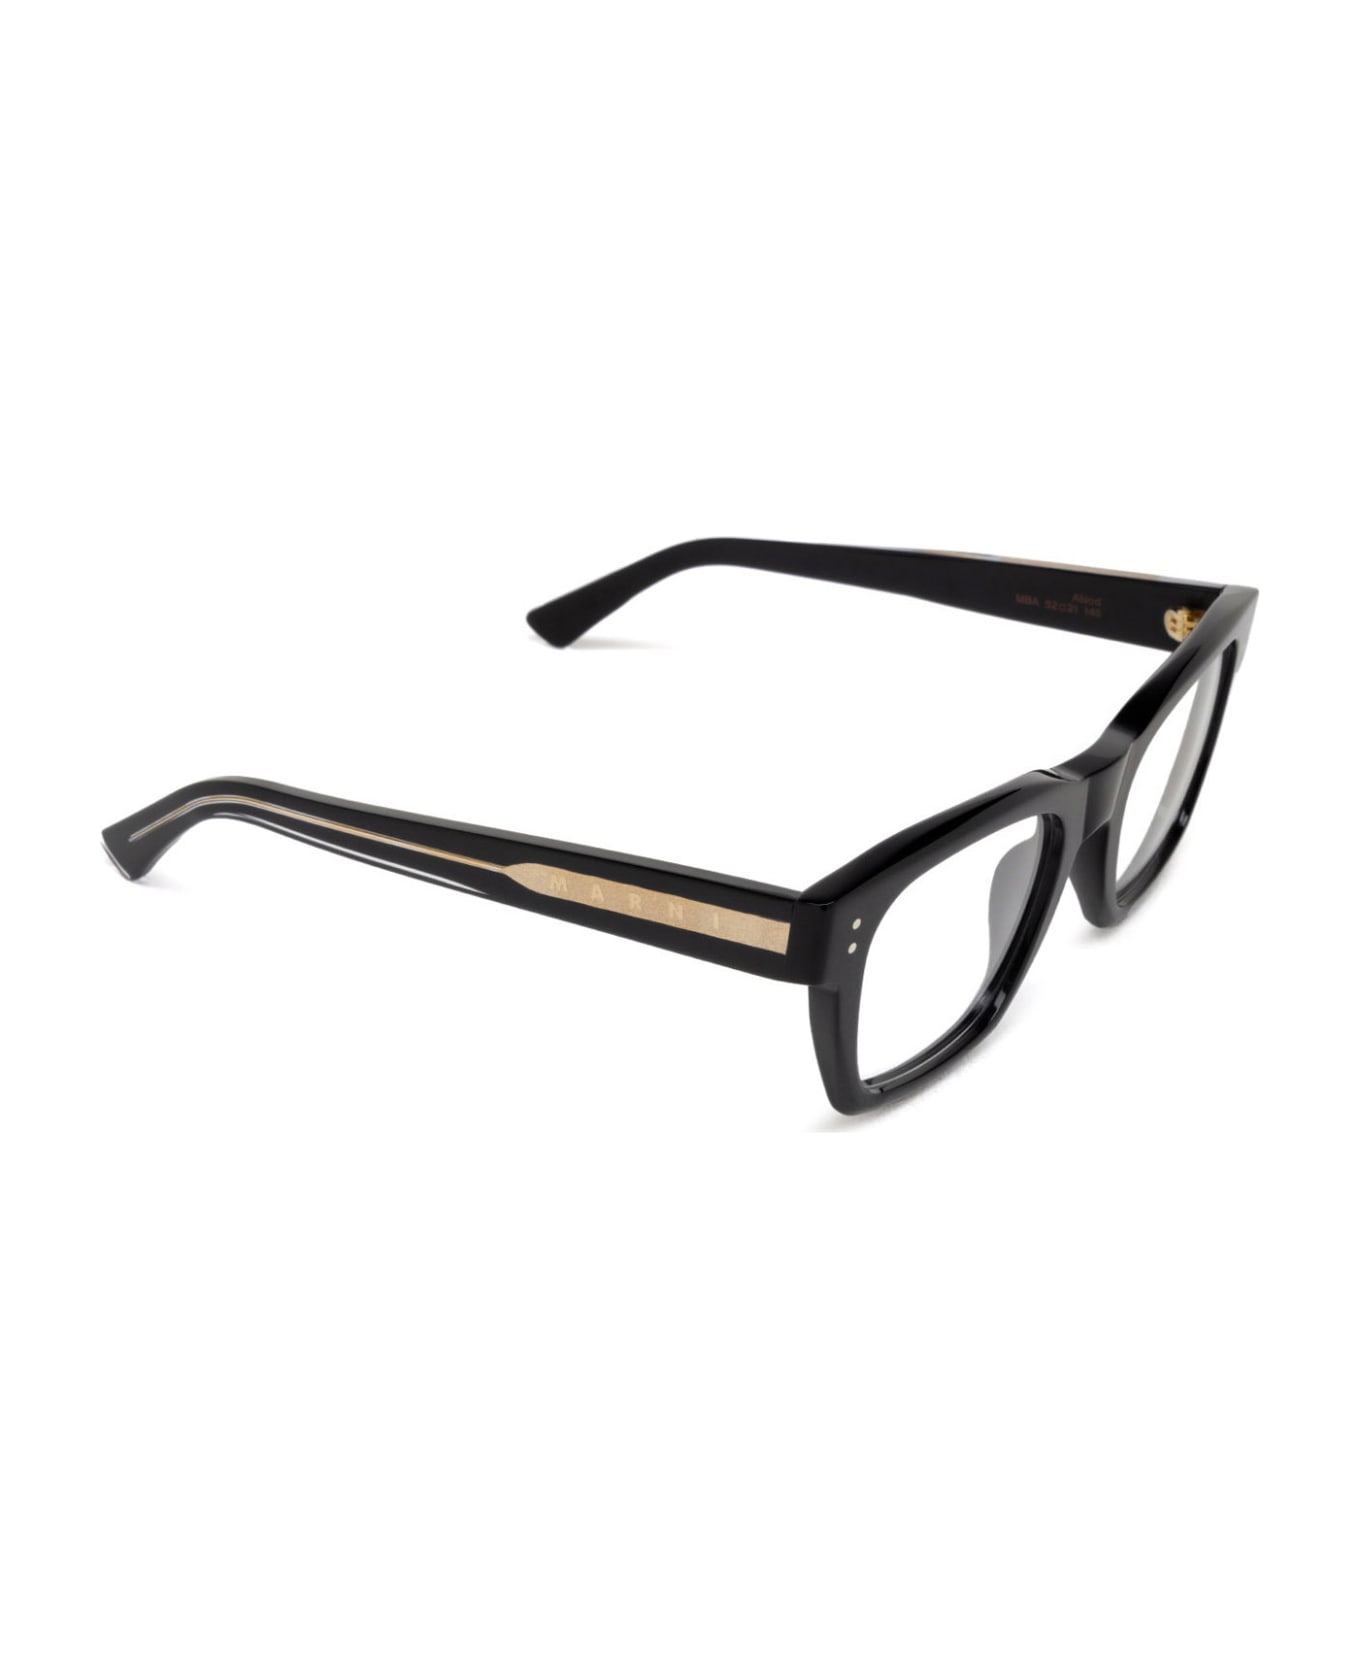 Marni Eyewear Abiod Nero Glasses - Nero アイウェア